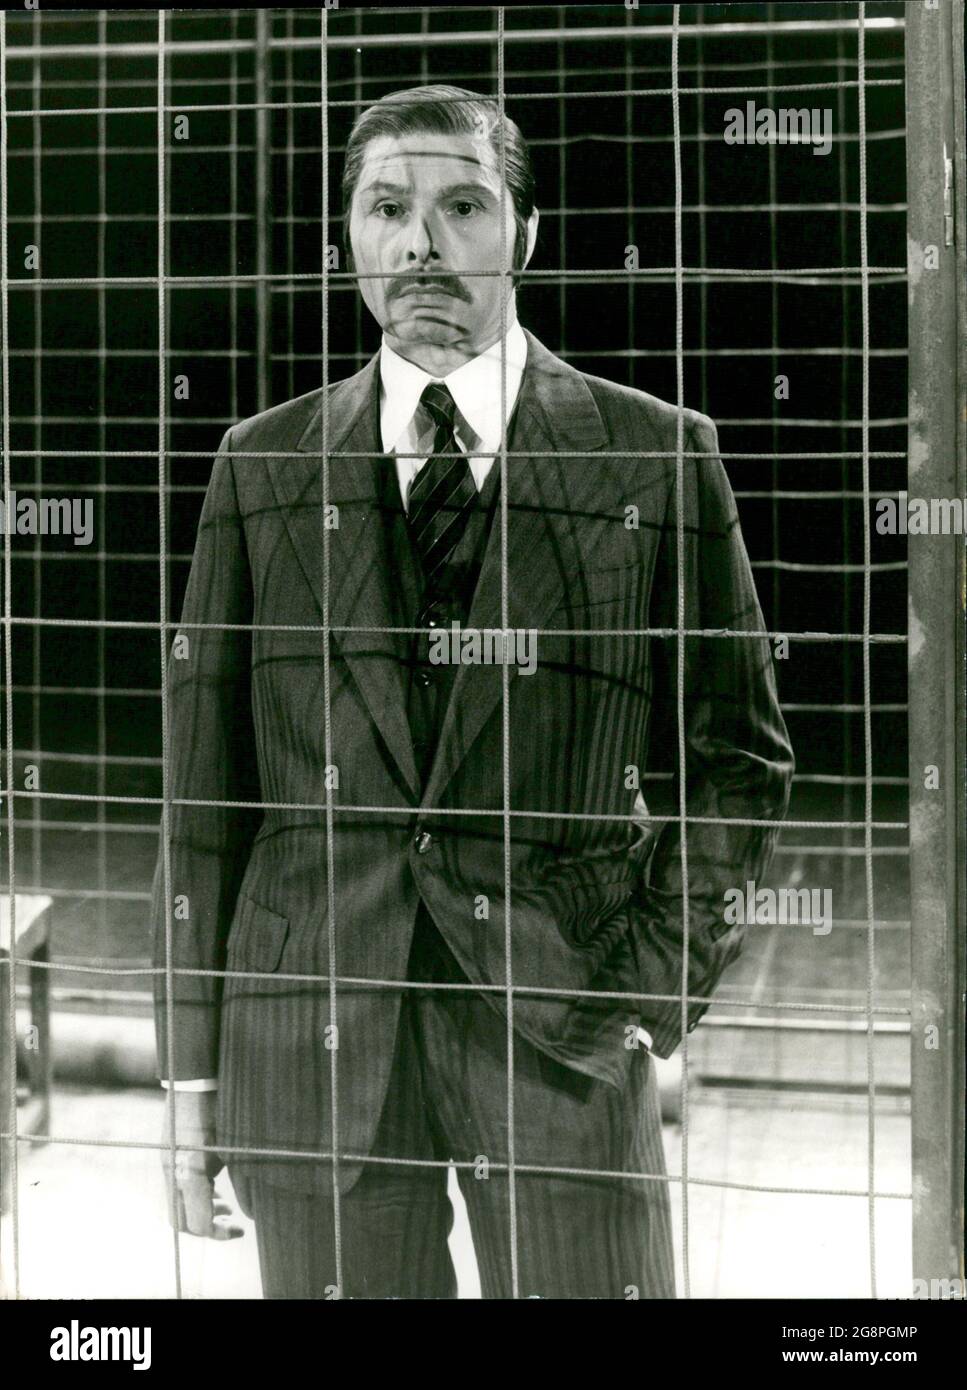 Tiger Brown, der Polizeisheriff Londons hat Mackie Messer (Rolf Boysen) notgedrungen im Old Bailey eingesperrt, obwohl er korrupt genug gewesen ist, so manche seiner üblen Untaten zu übersehen. Stock Photo